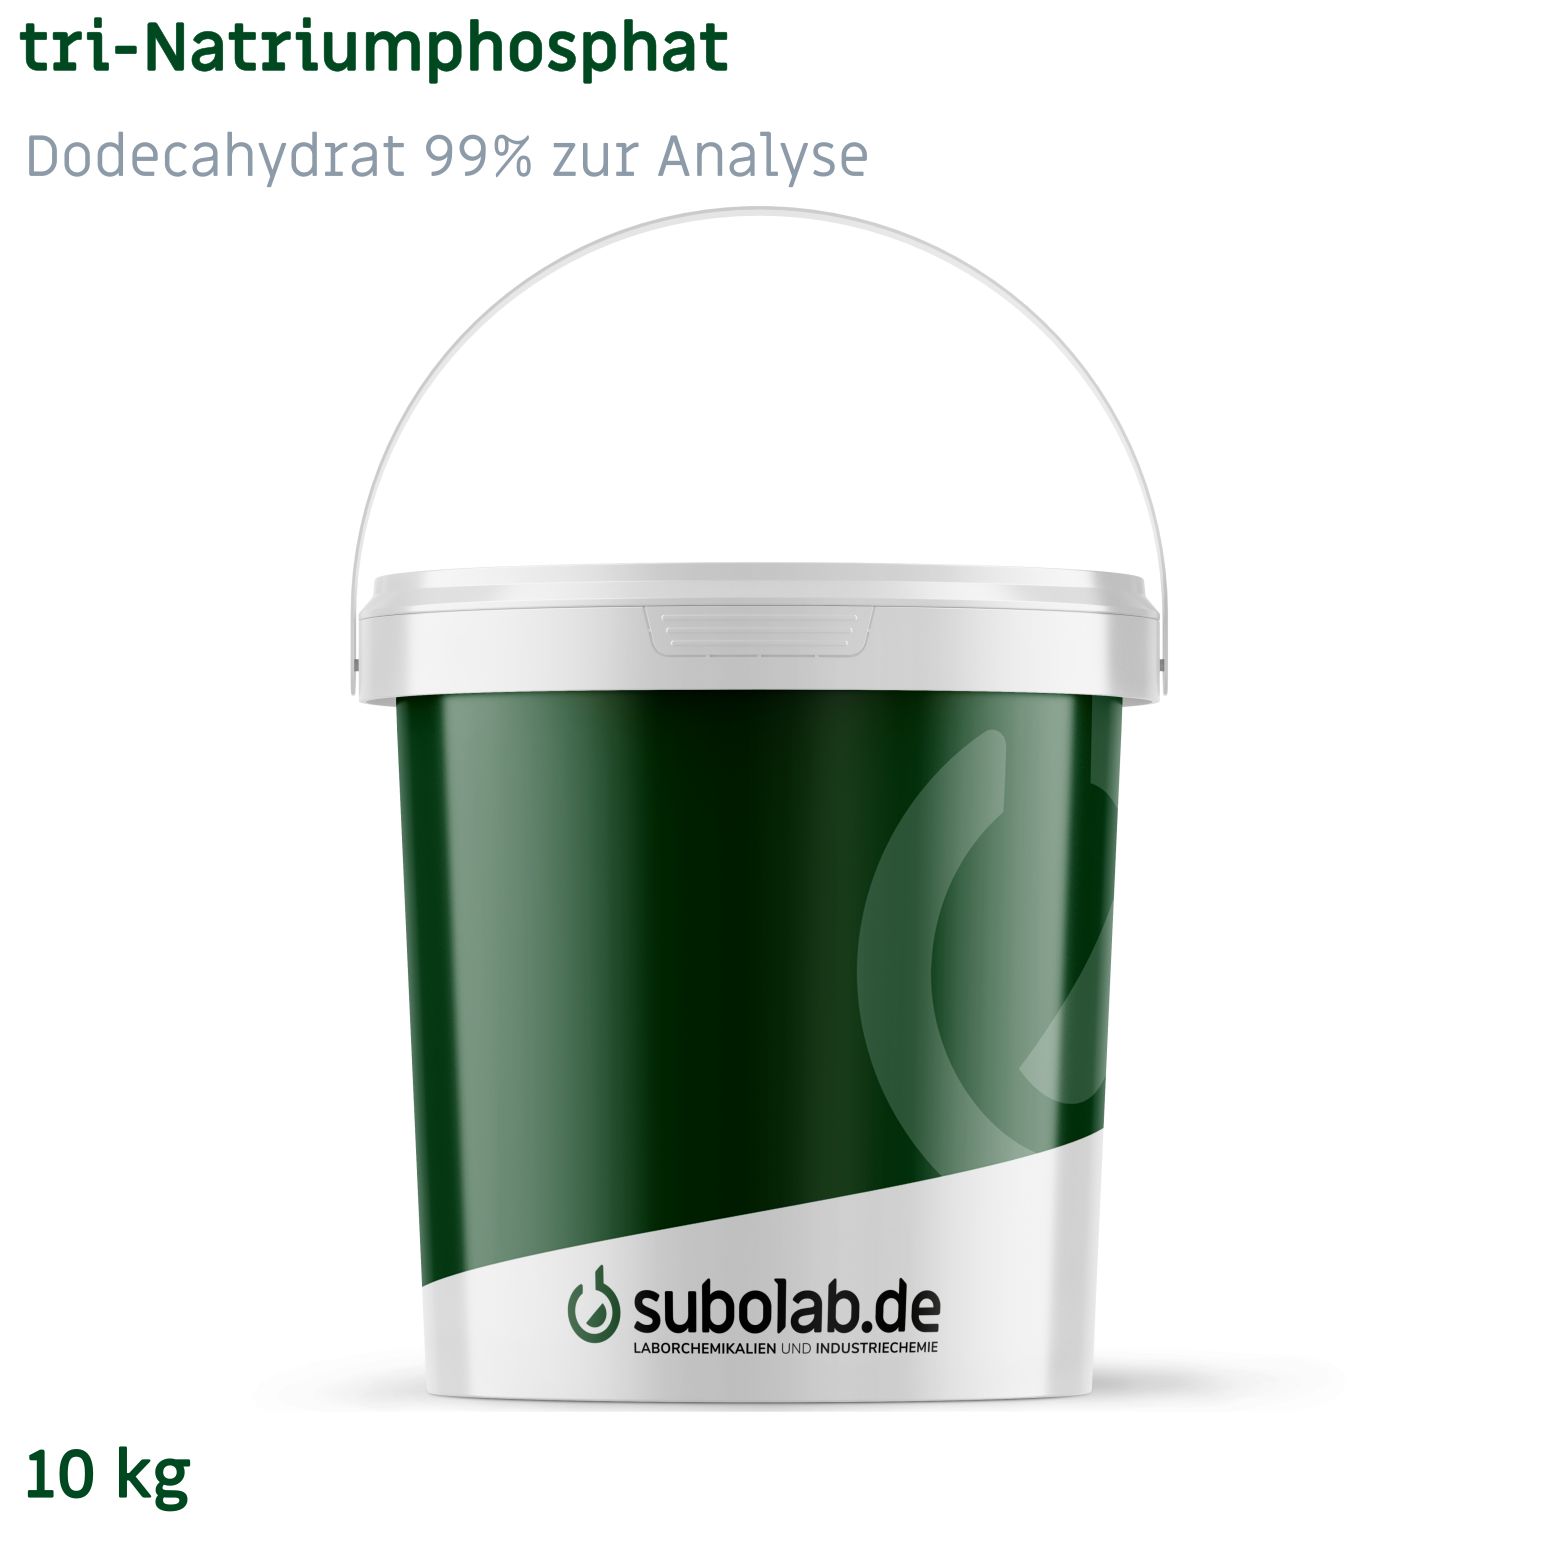 Bild von tri-Natriumphosphat - Dodecahydrat 99% zur Analyse (10 kg)